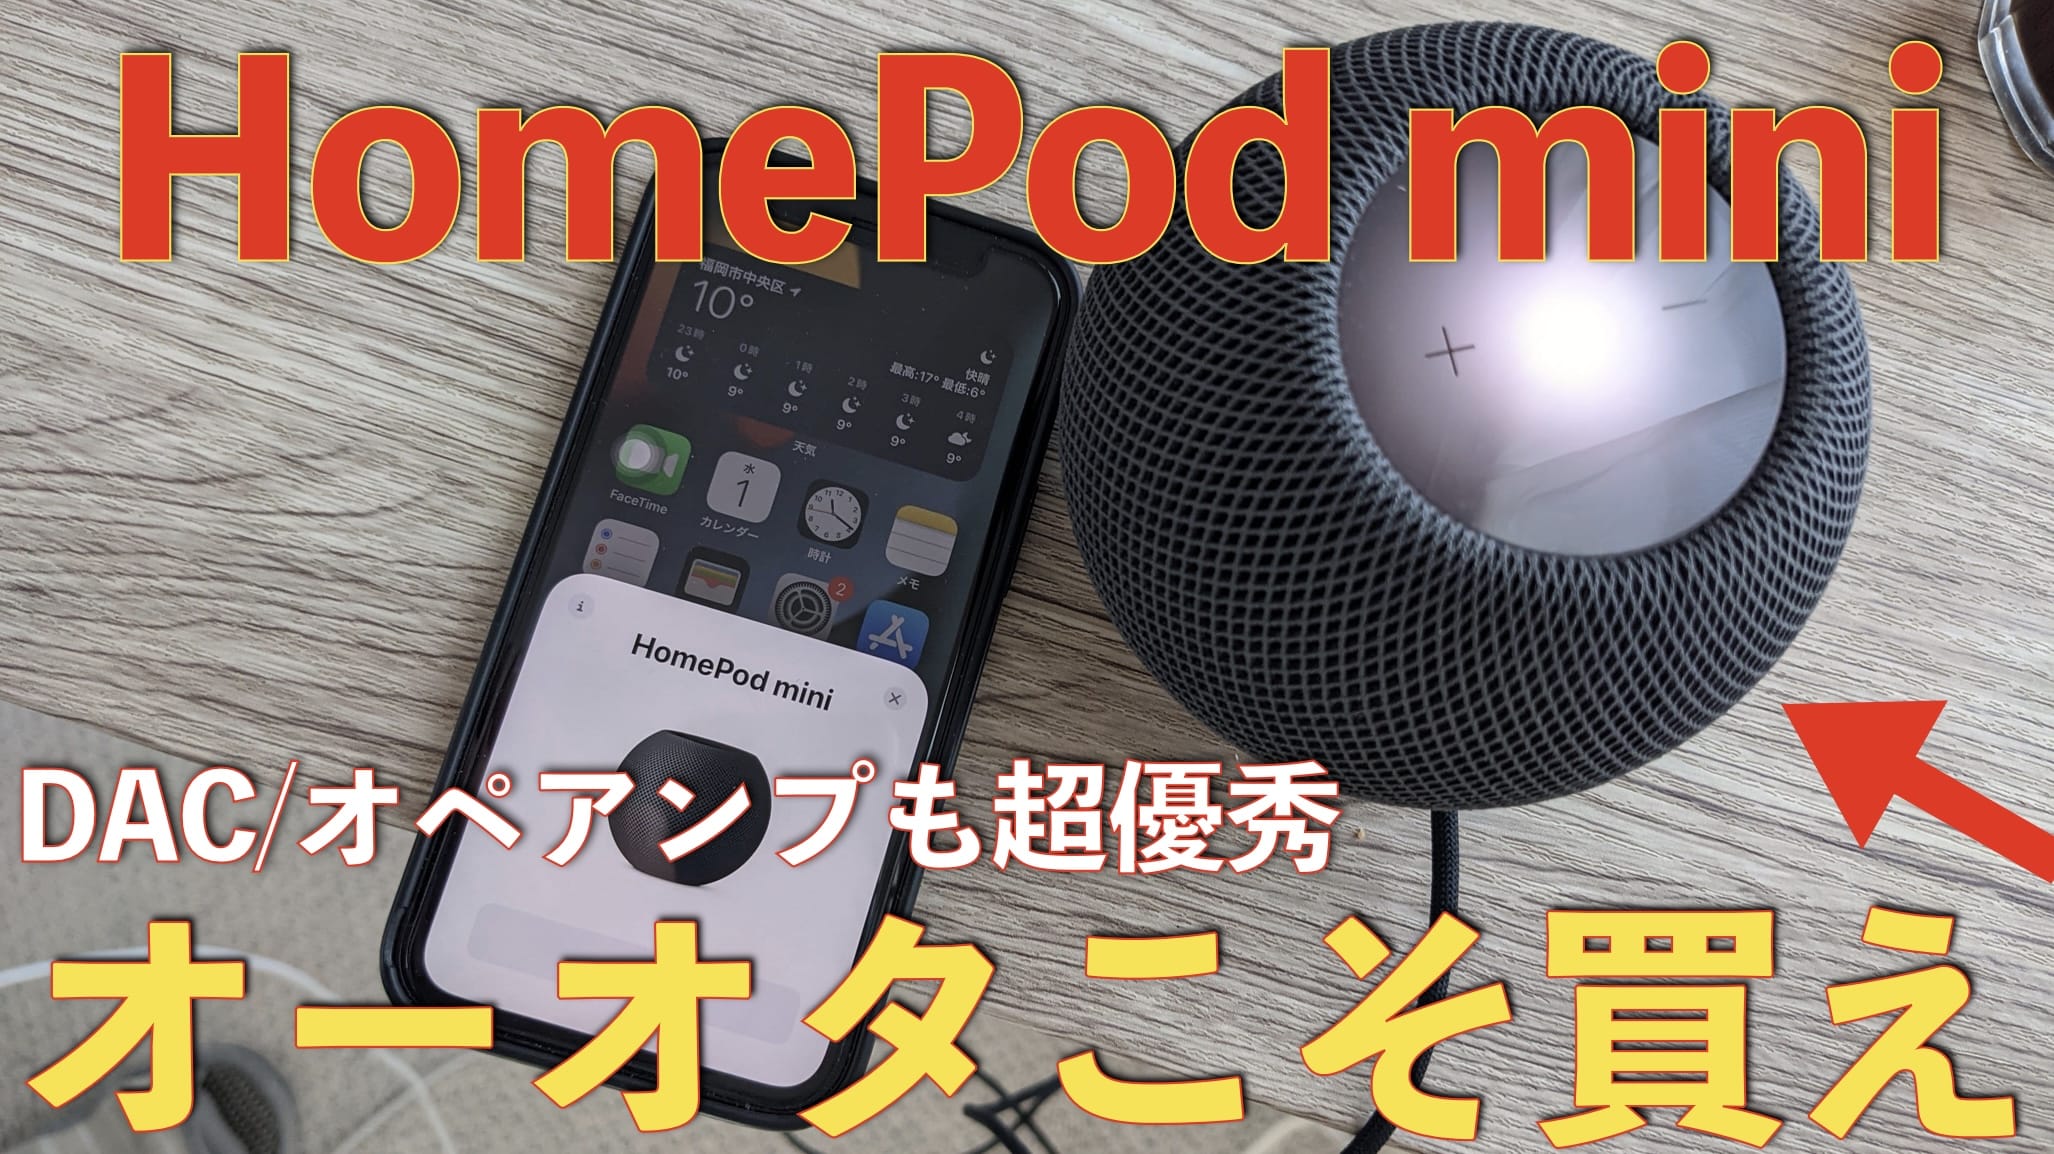 HomePod miniが一万円で買える超優秀なオーディオシステムである理由とデメリット2つサムネイル画像